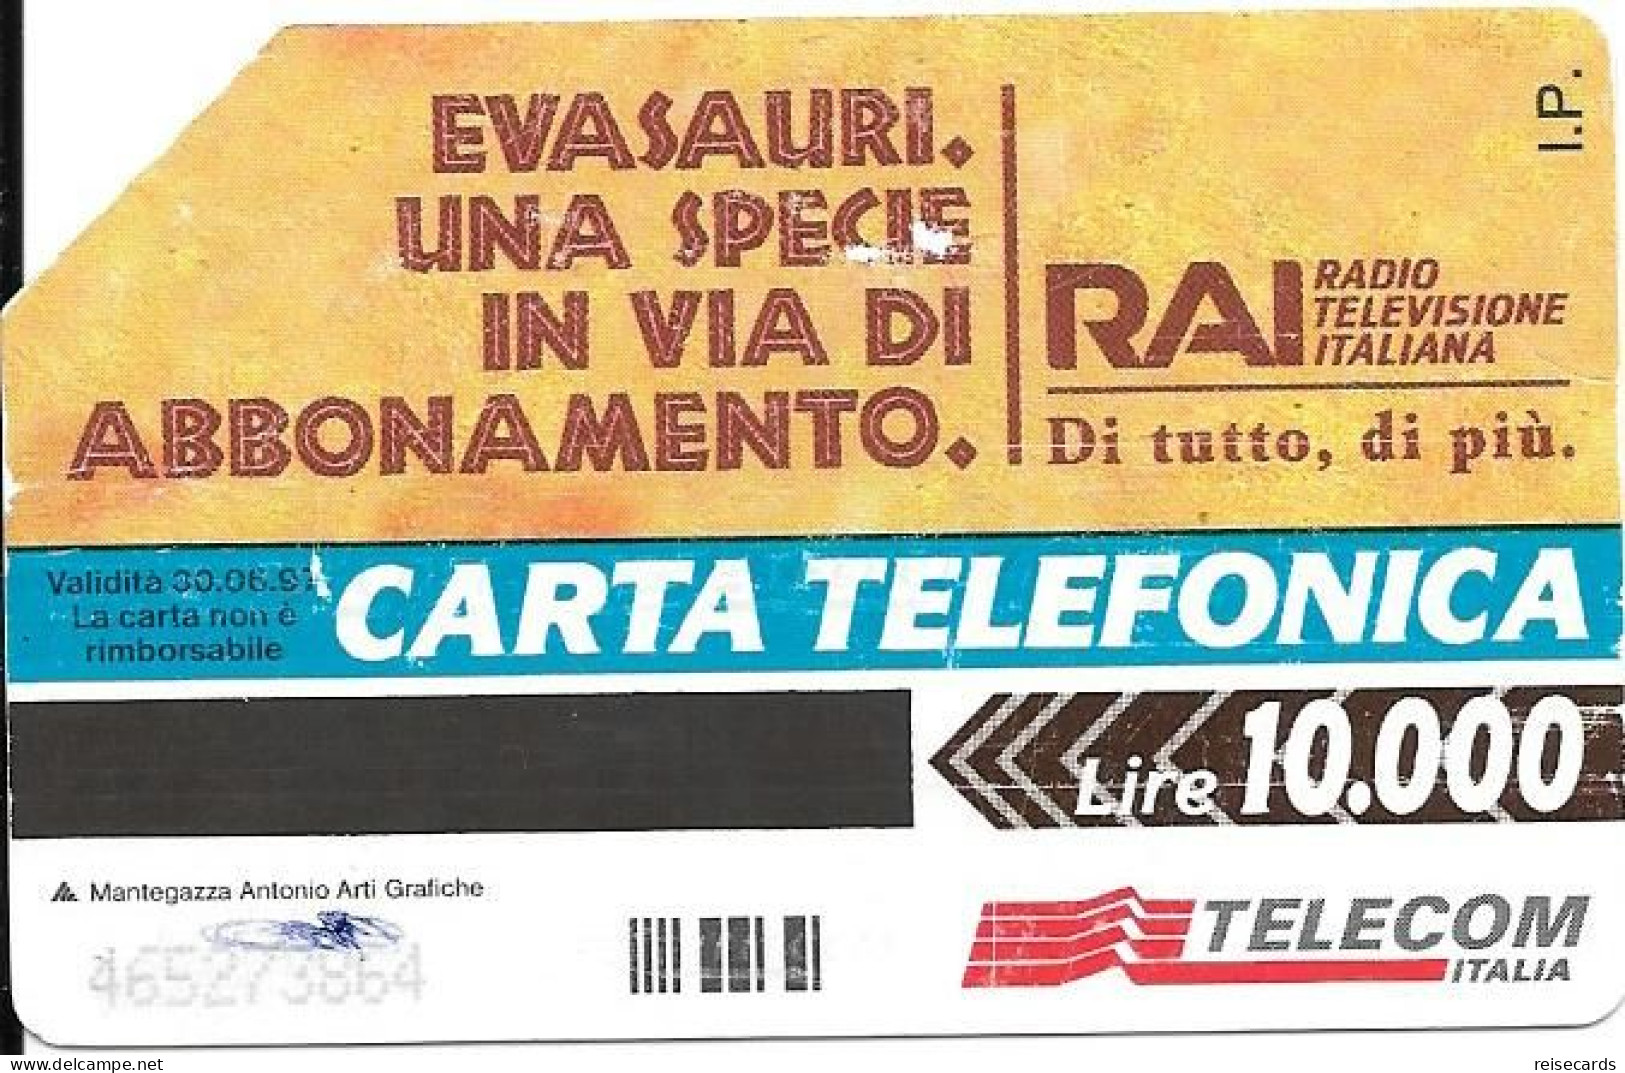 Italy: Telecom Italia - RAI Radio Televisione Italiana - Pubbliche Pubblicitarie